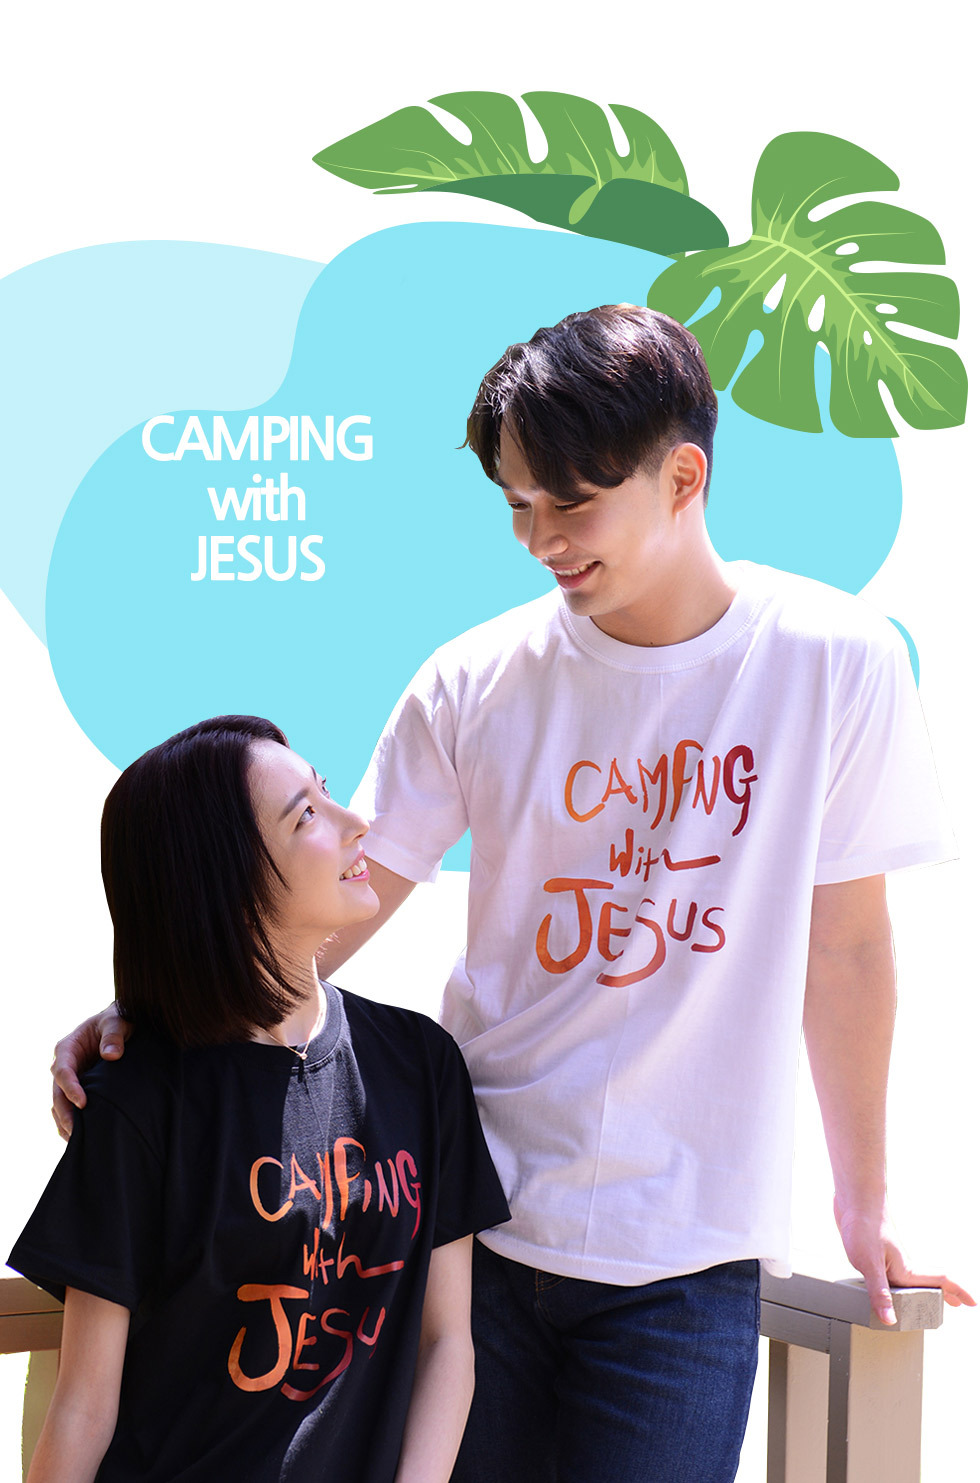 교회 단체티셔츠 예수님과함께 (Camping with Jesus) - 성인티셔츠(레드캠프) 